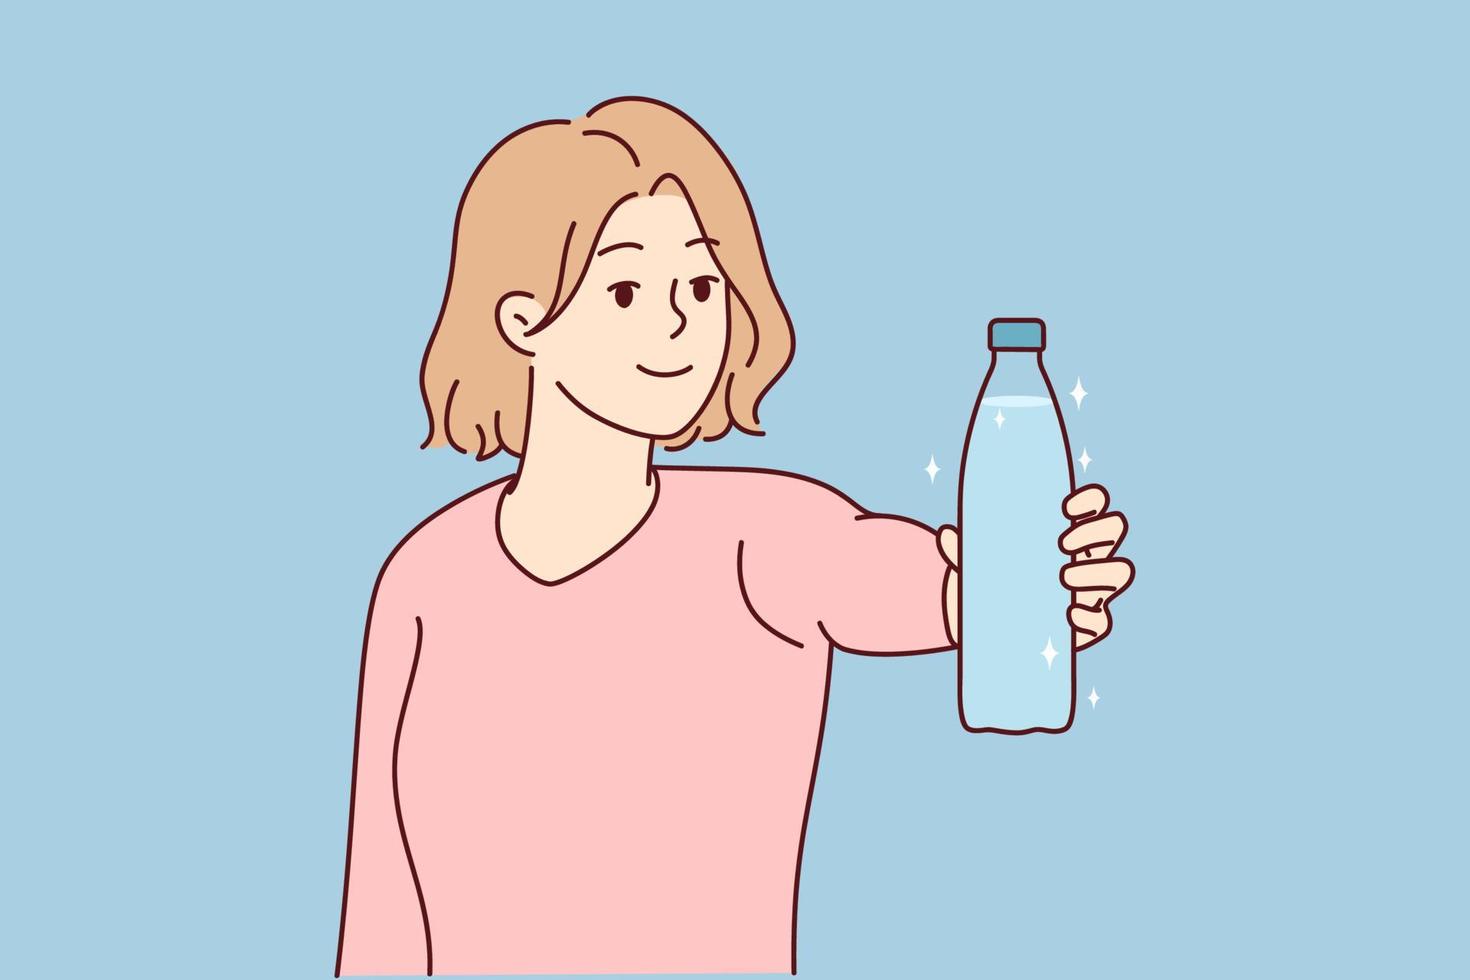 Lächelnde junge Frau hält eine Flasche Wasser und empfiehlt, klares, sauberes Wasser zu trinken. glückliche frau gibt empfehlung für einen gesunden lebensstil. Vektor-Illustration. vektor